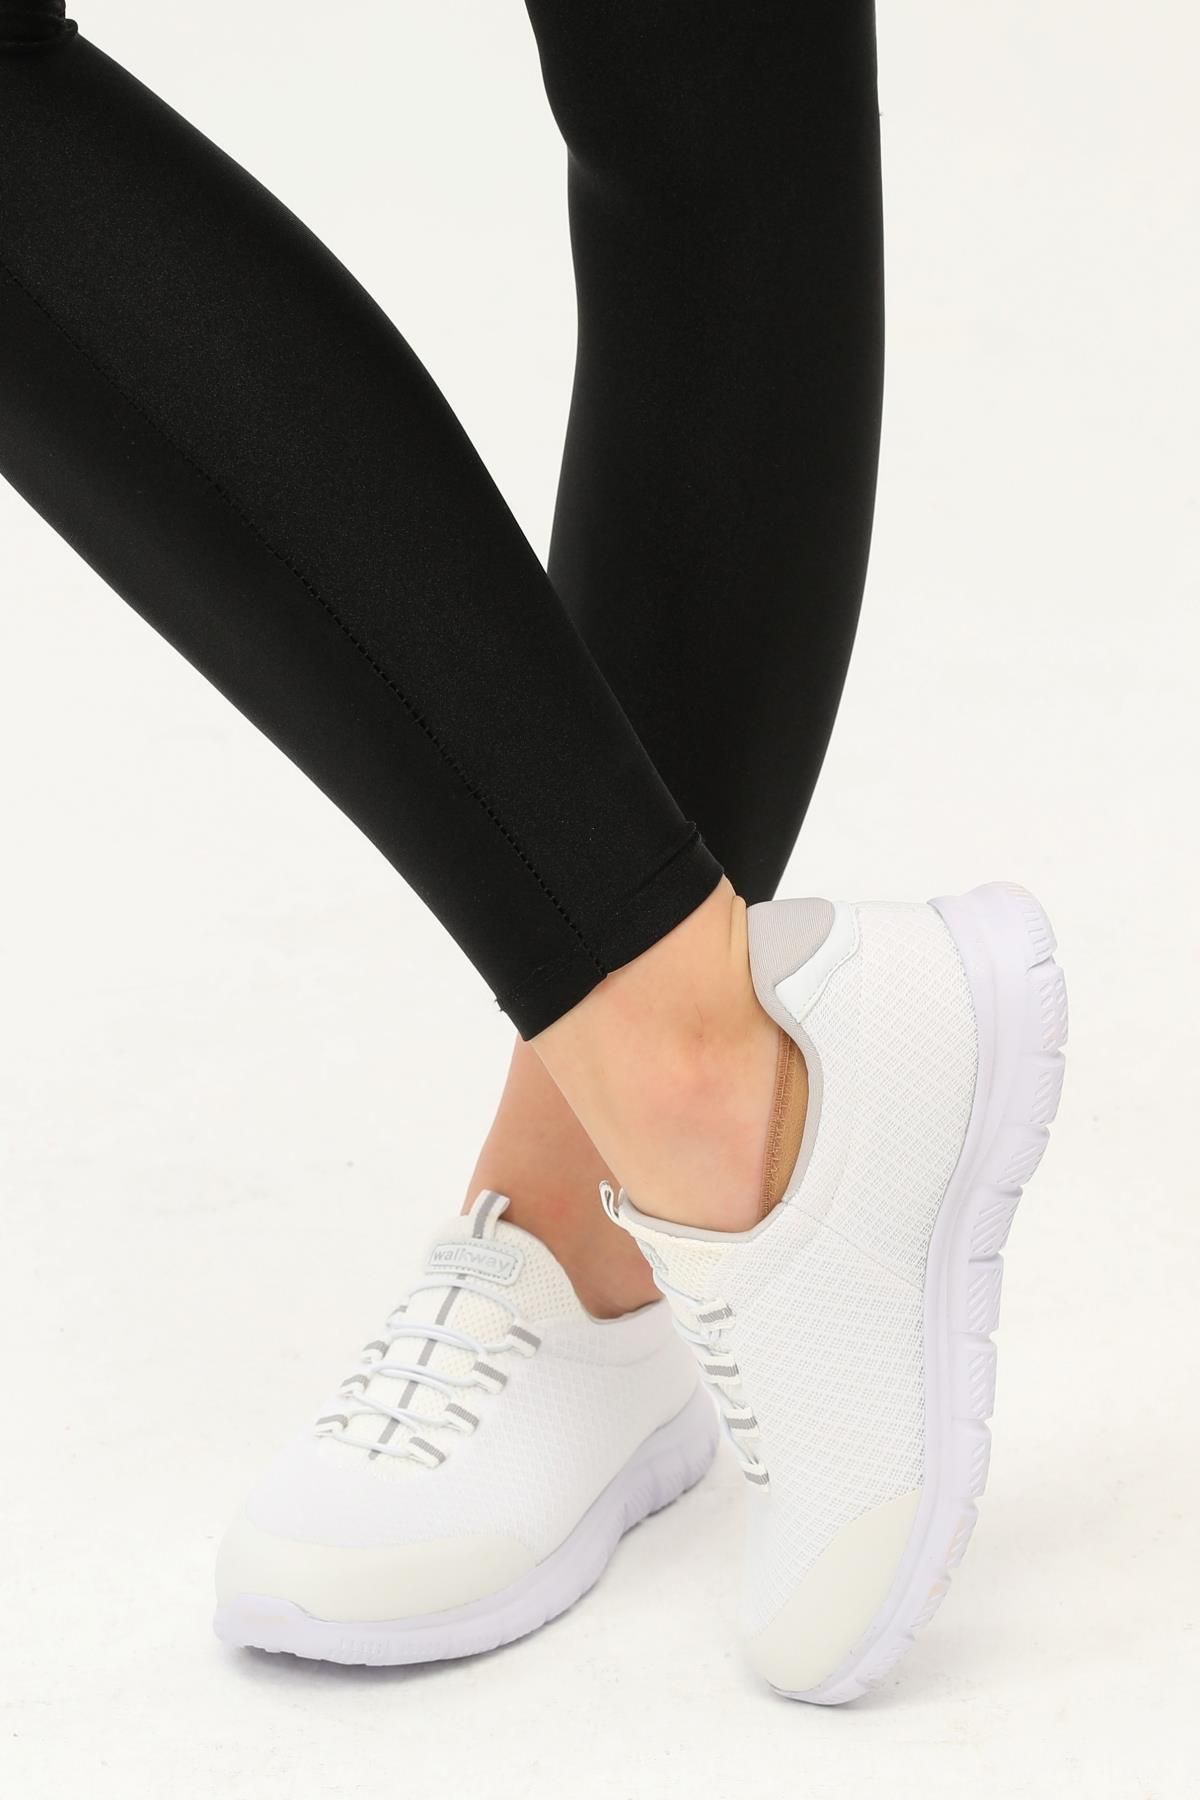 WALKWAY Flexible Beyaz-gümüş Kadın Spor Ayakkabı